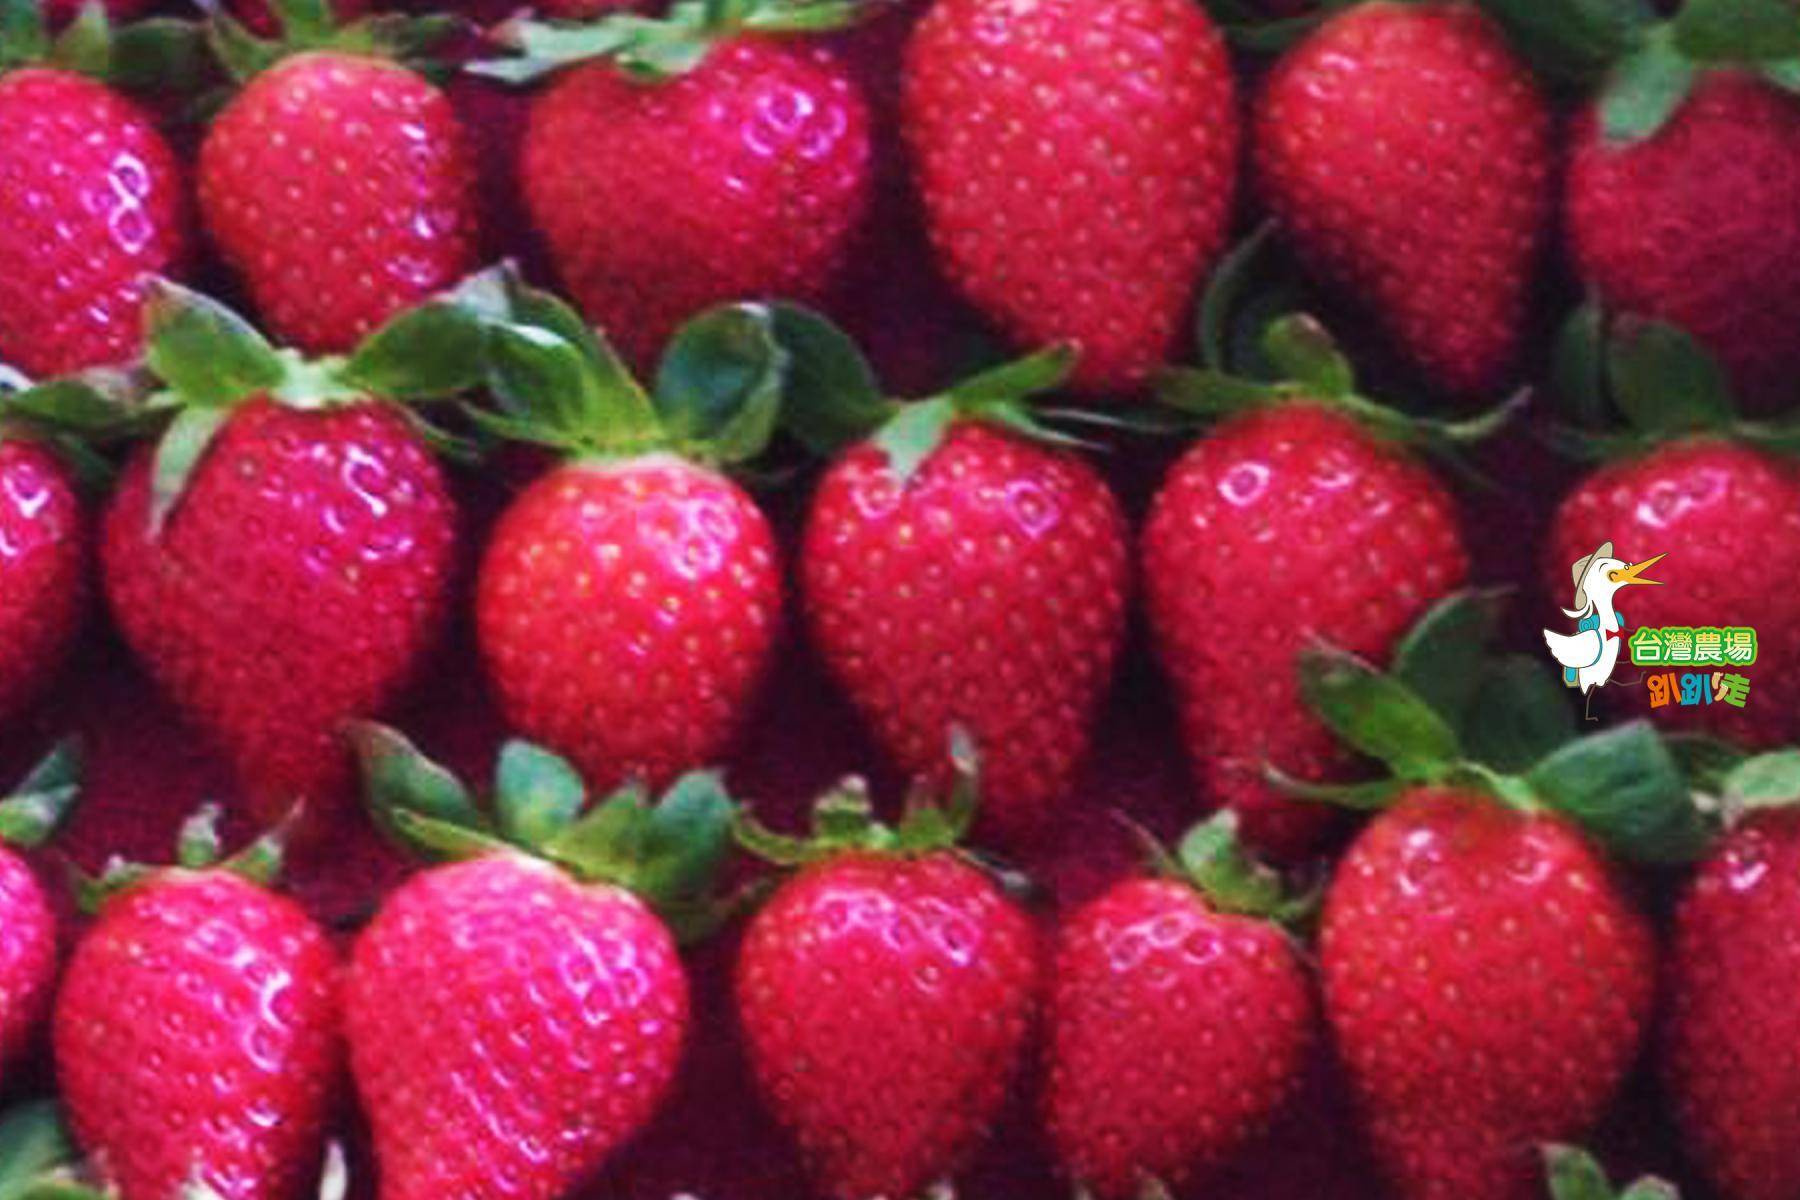 (舊)屏東-莓洋洋草莓園-採果(草莓)體驗券6